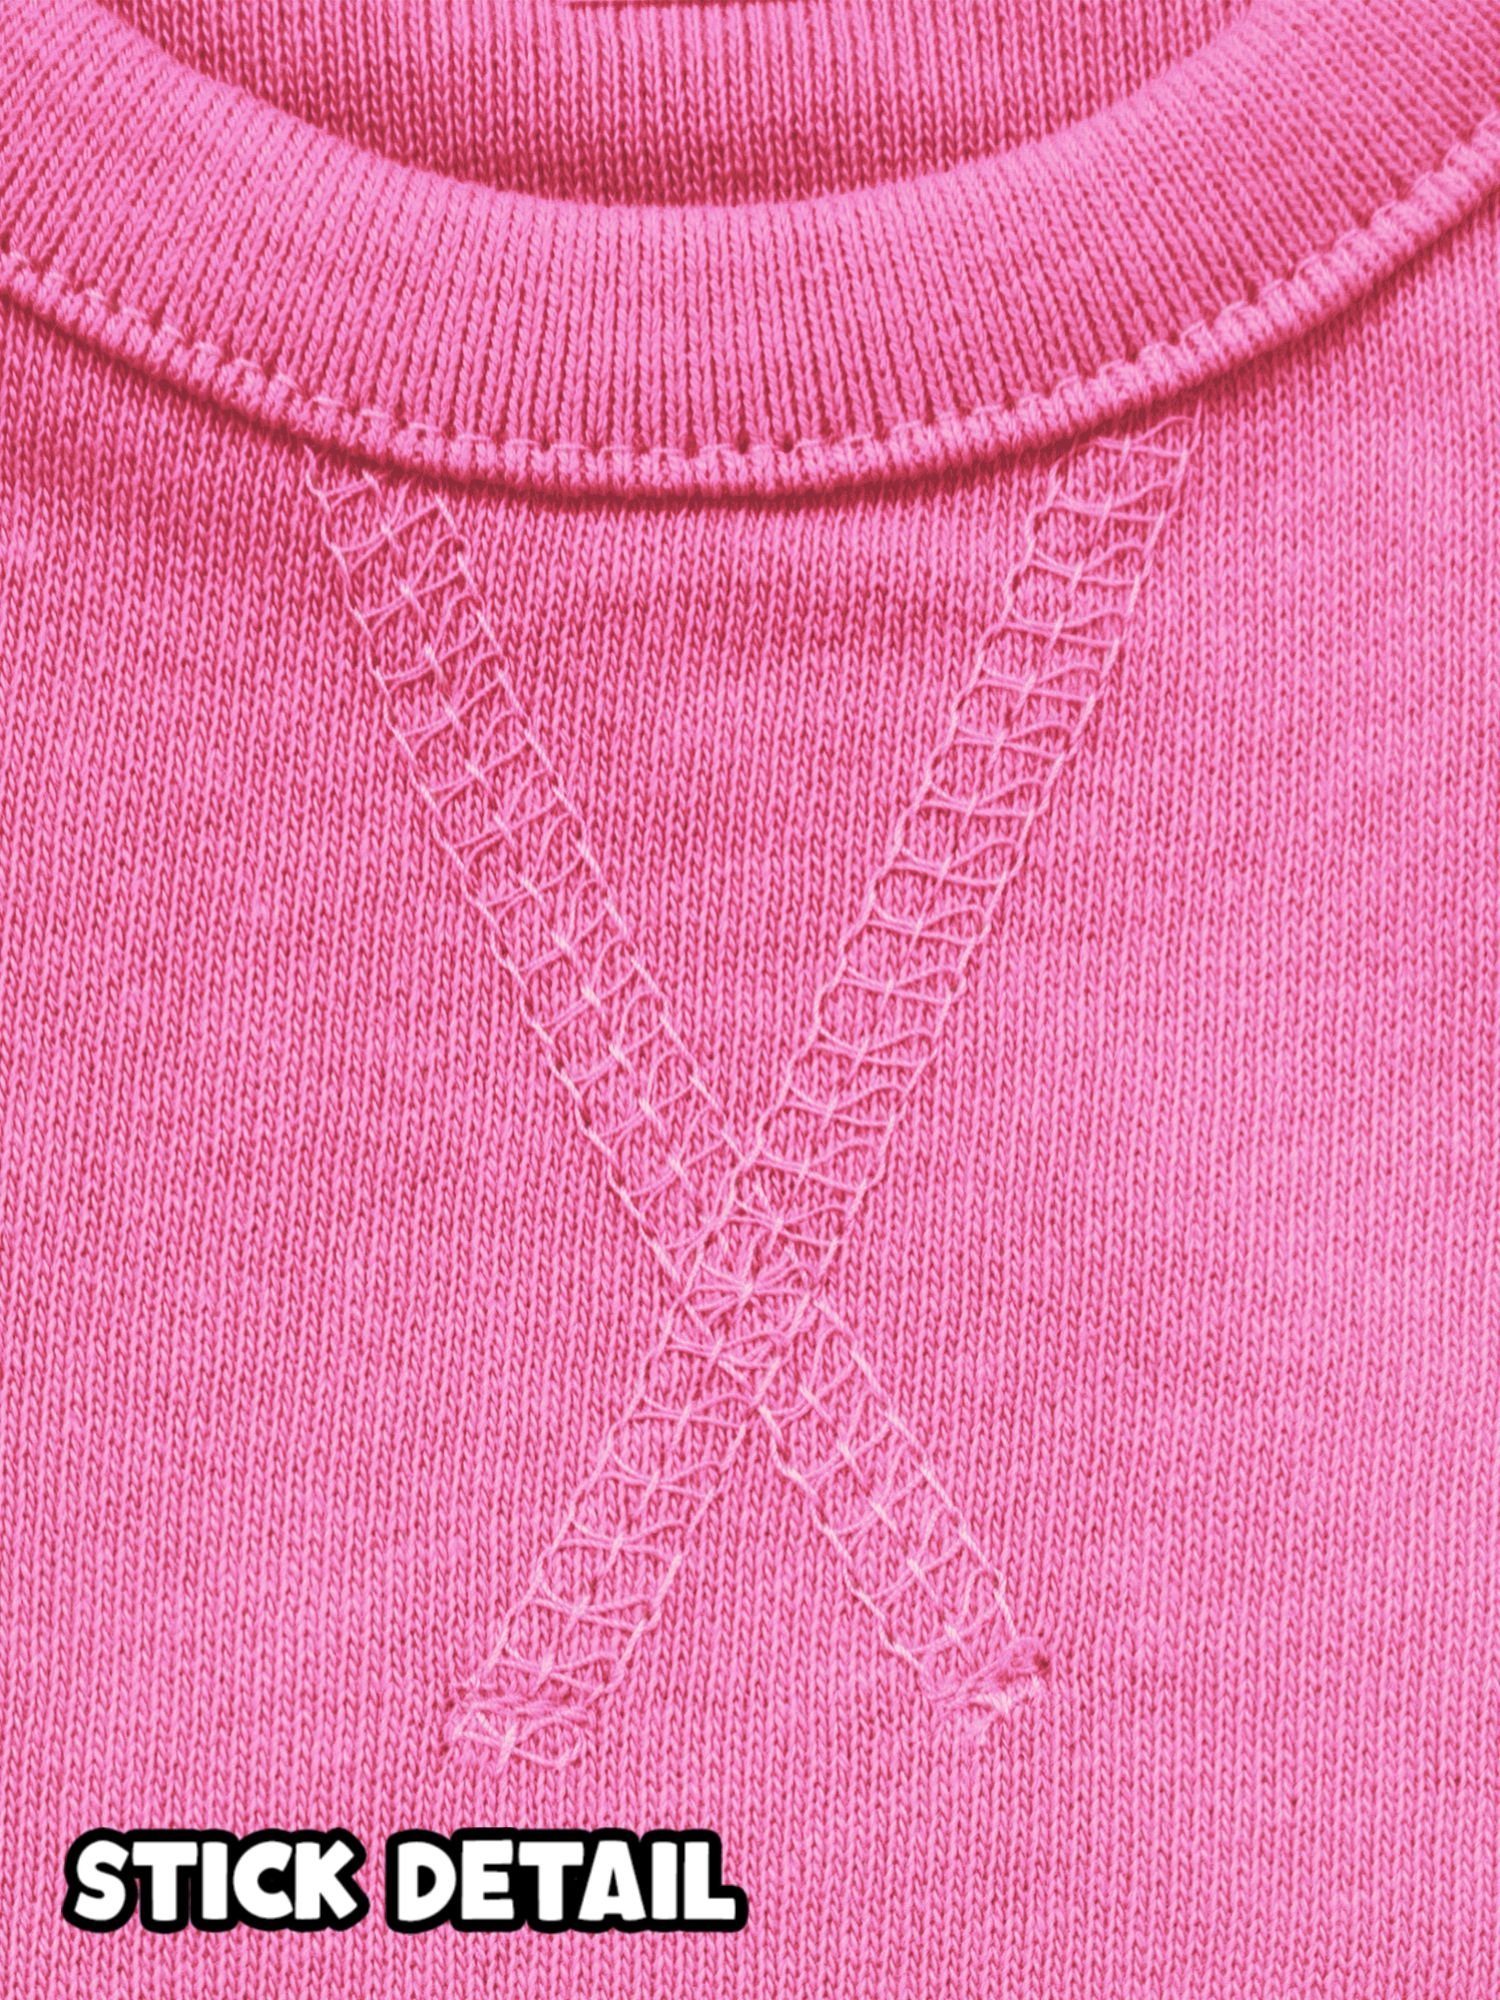 Pink Sweatshirt Ich 1. eins Blau Geburtstag 3 bin Junge Shirtracer Erster